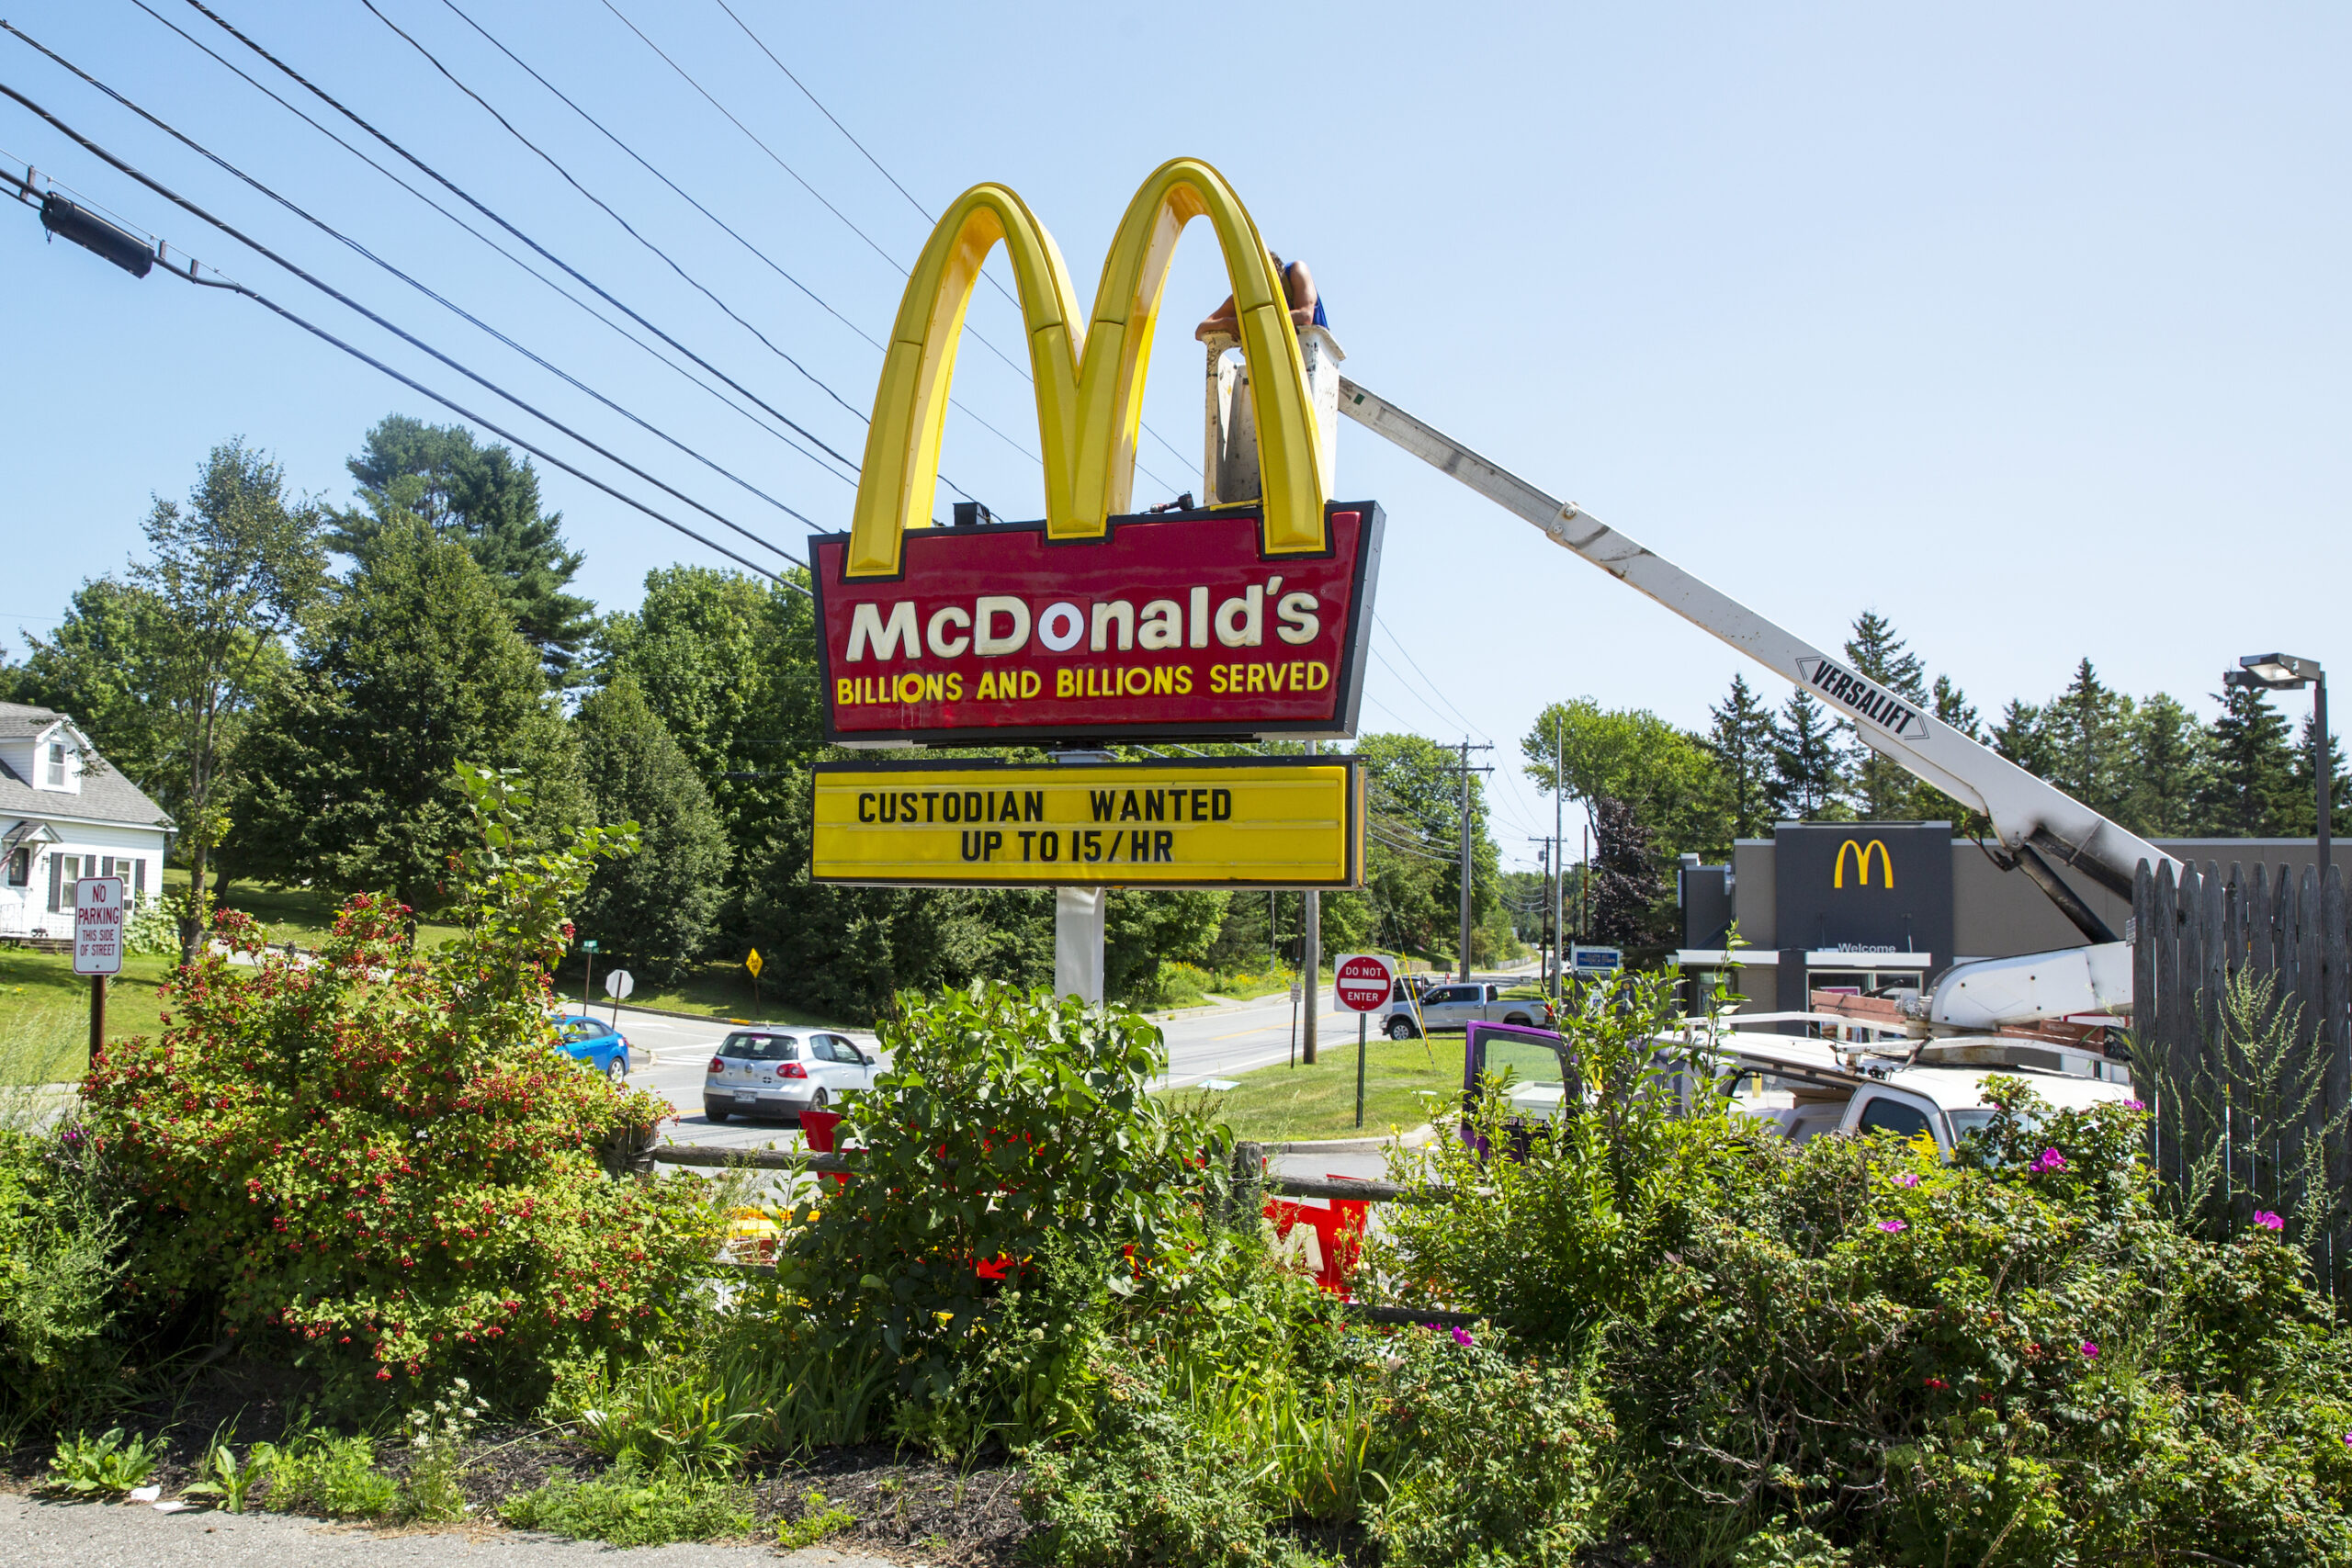 A man adjusting a McDonald's sign